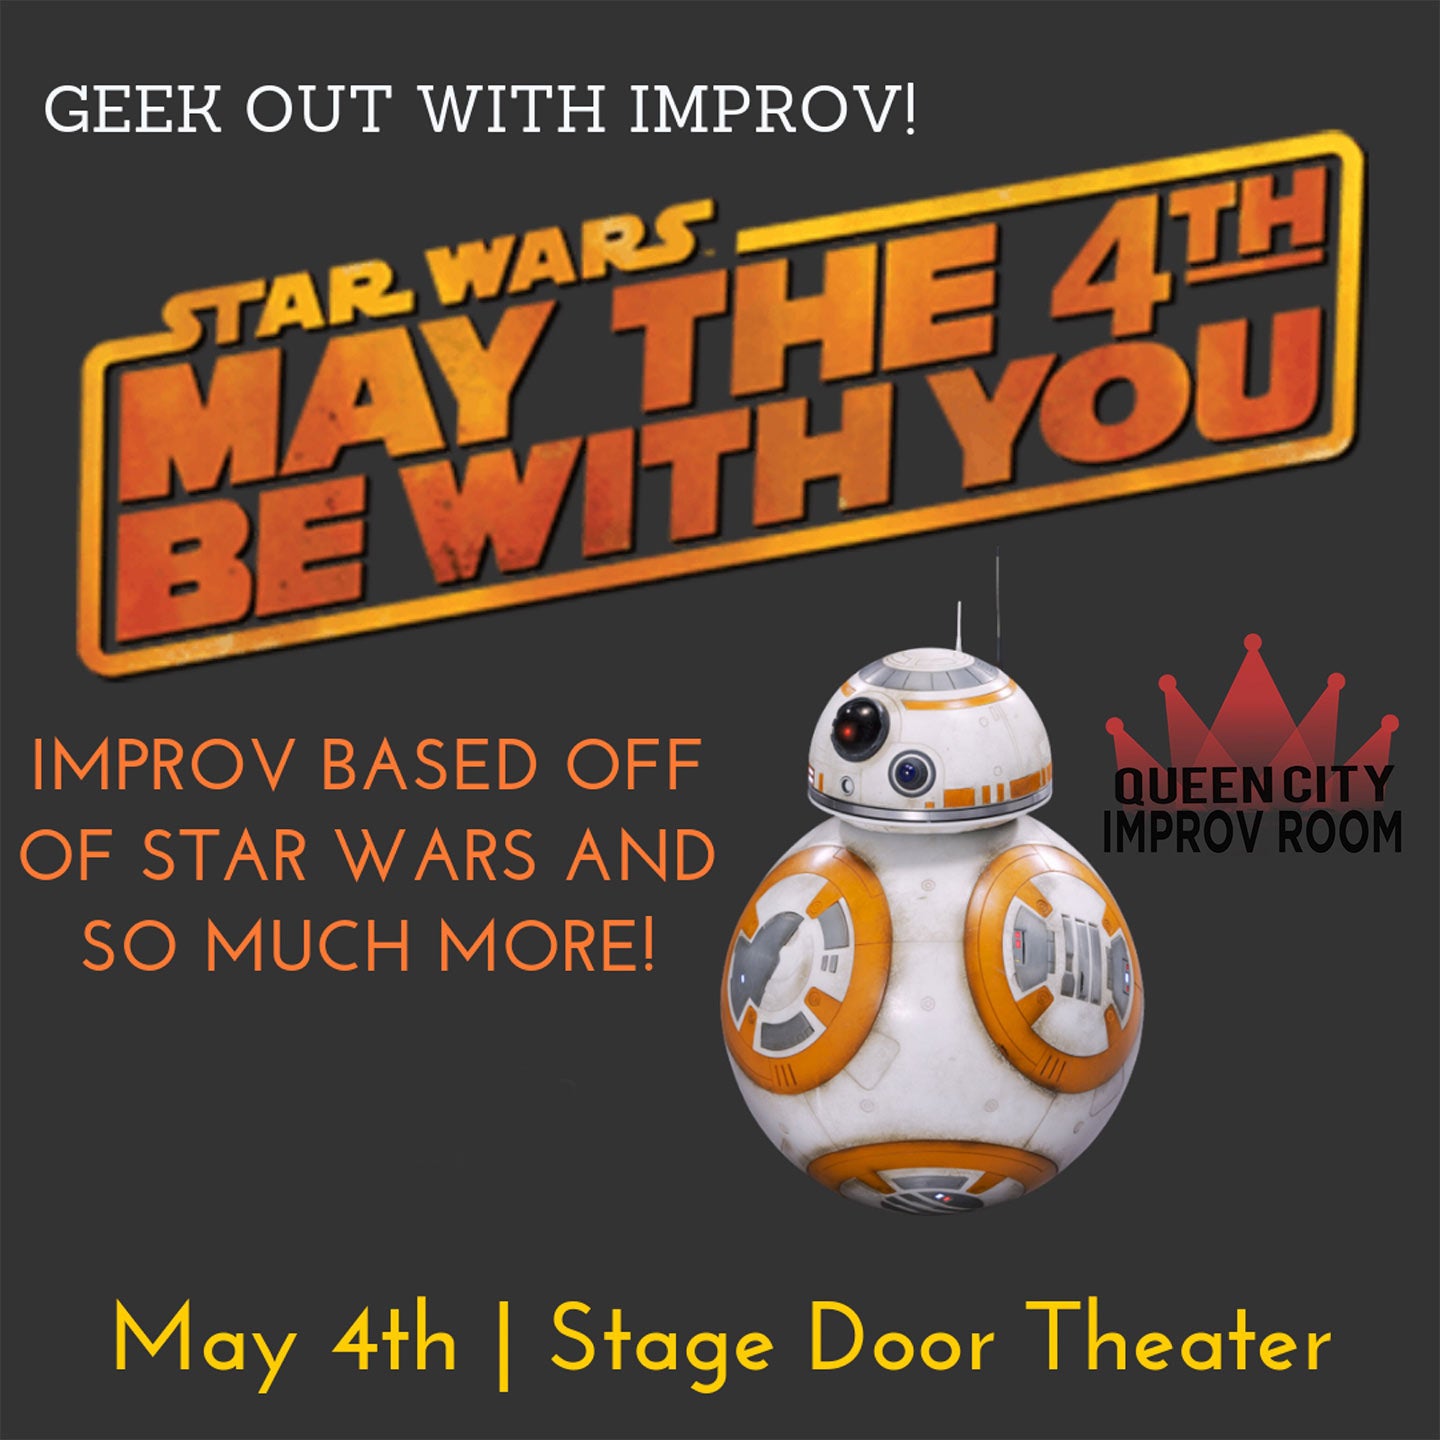 Queen City Improv Room: Star Wars & Geek Show